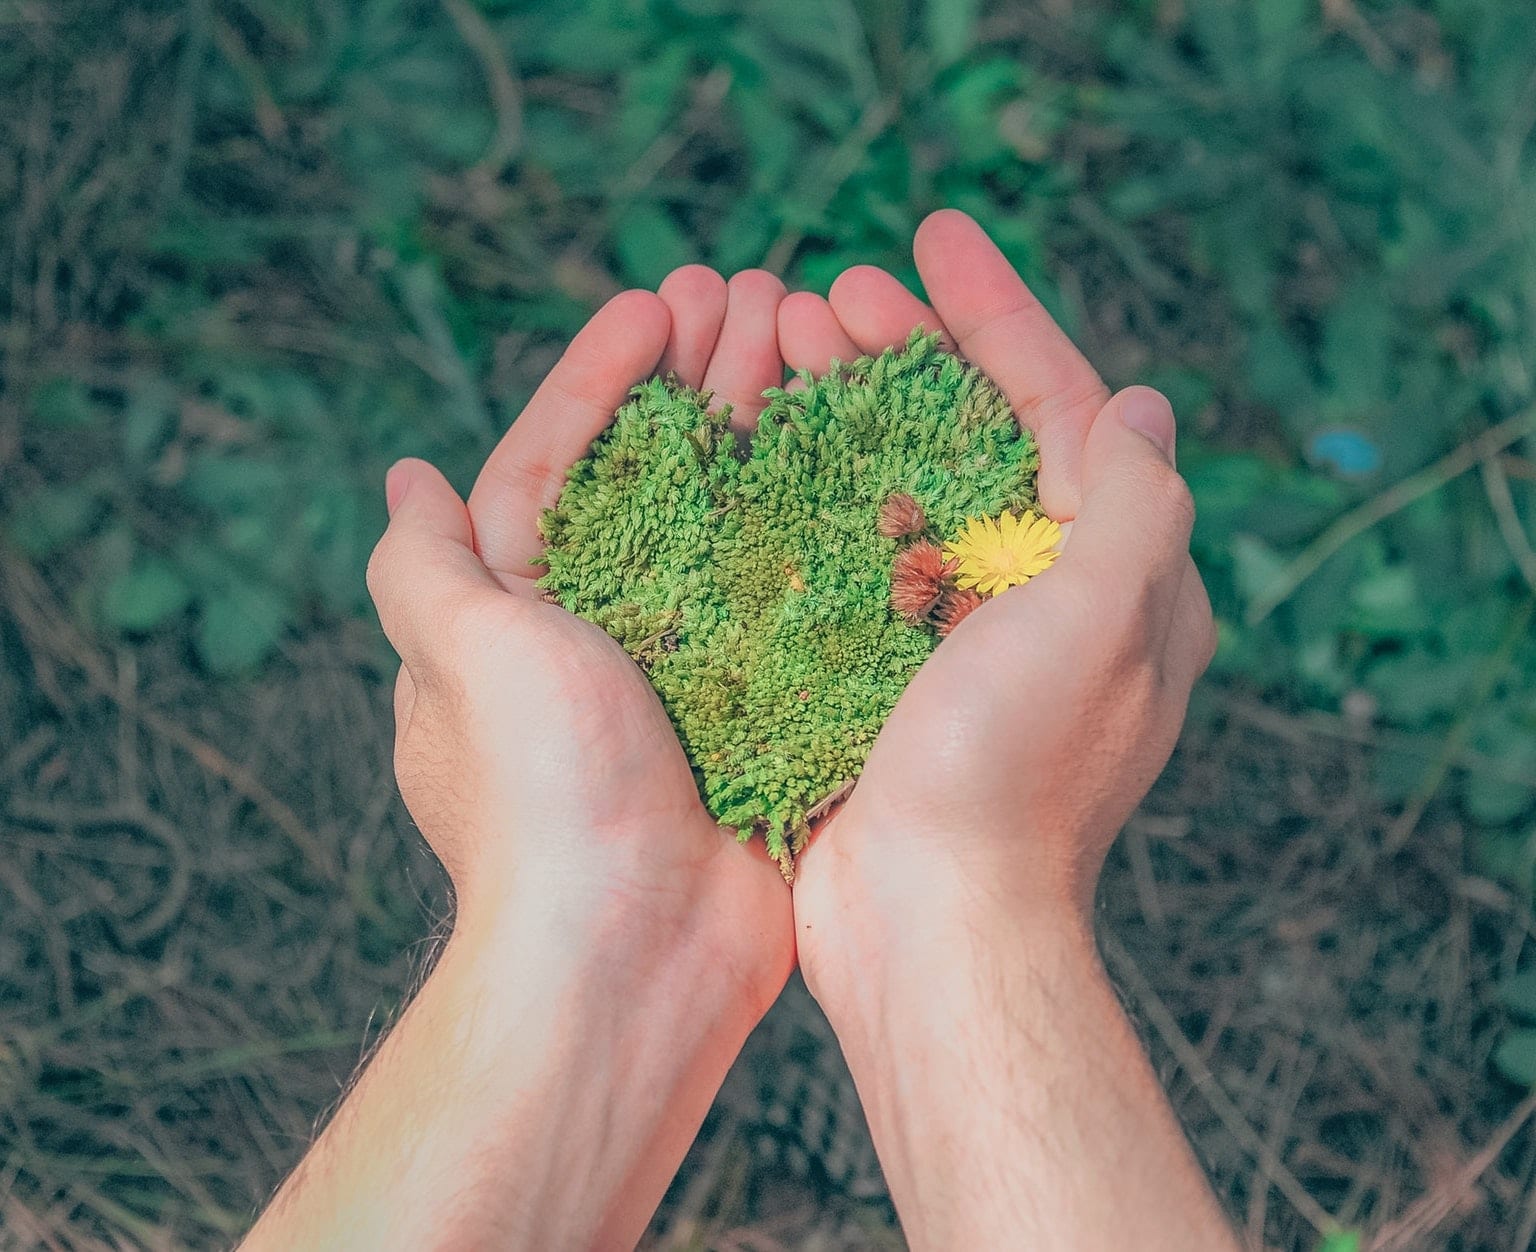 Hands holding grass